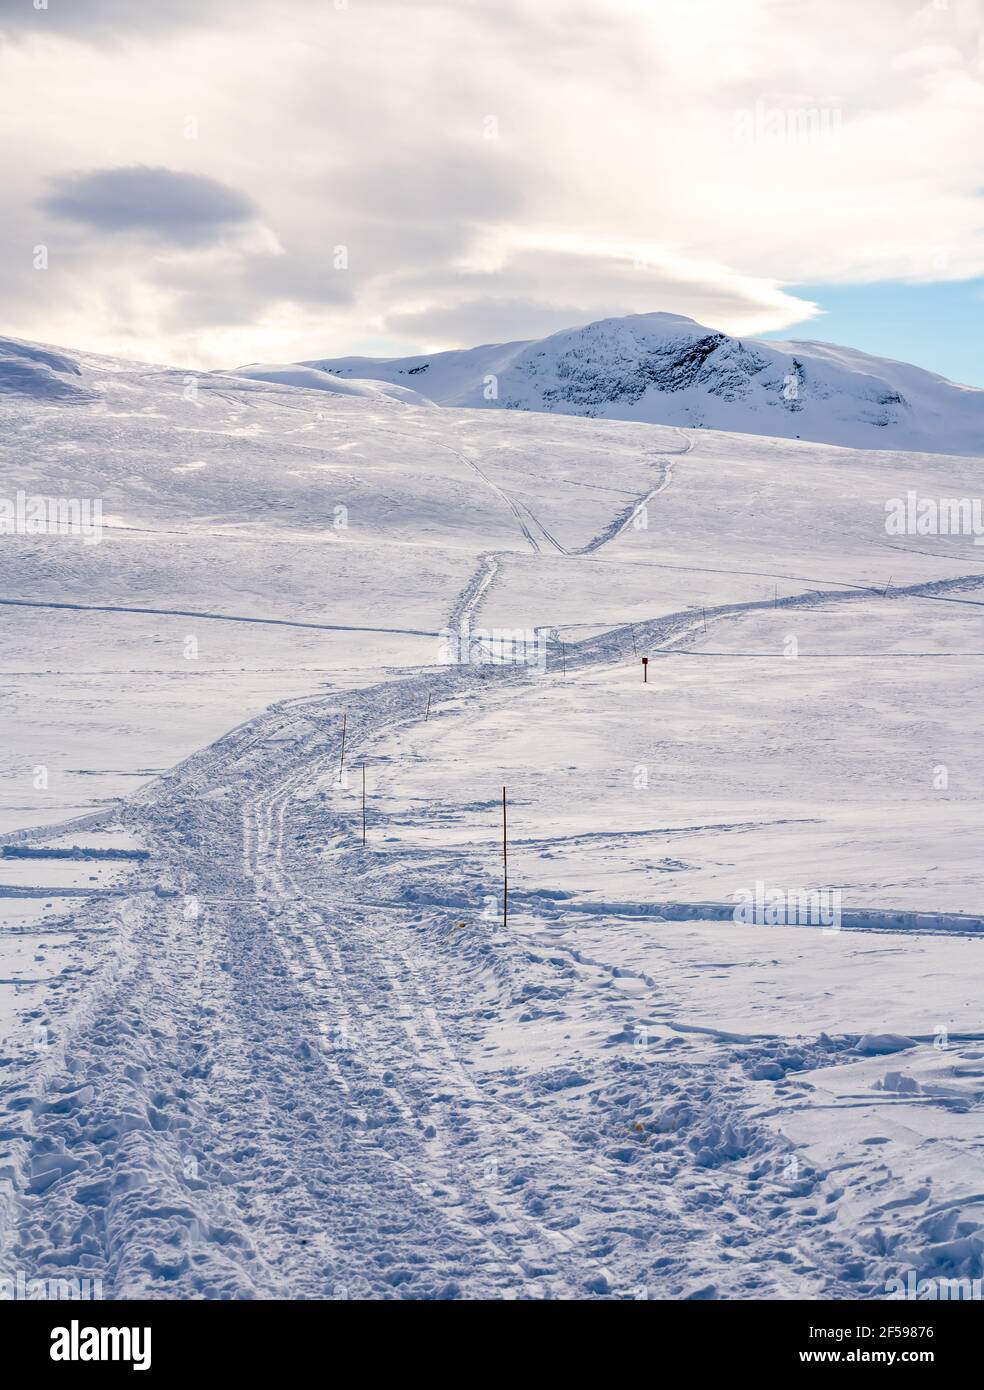 An einem kalten Wintertag können Sie auf den Skipisten in einer schneebedeckten Bergebene Ski fahren. Stockfoto